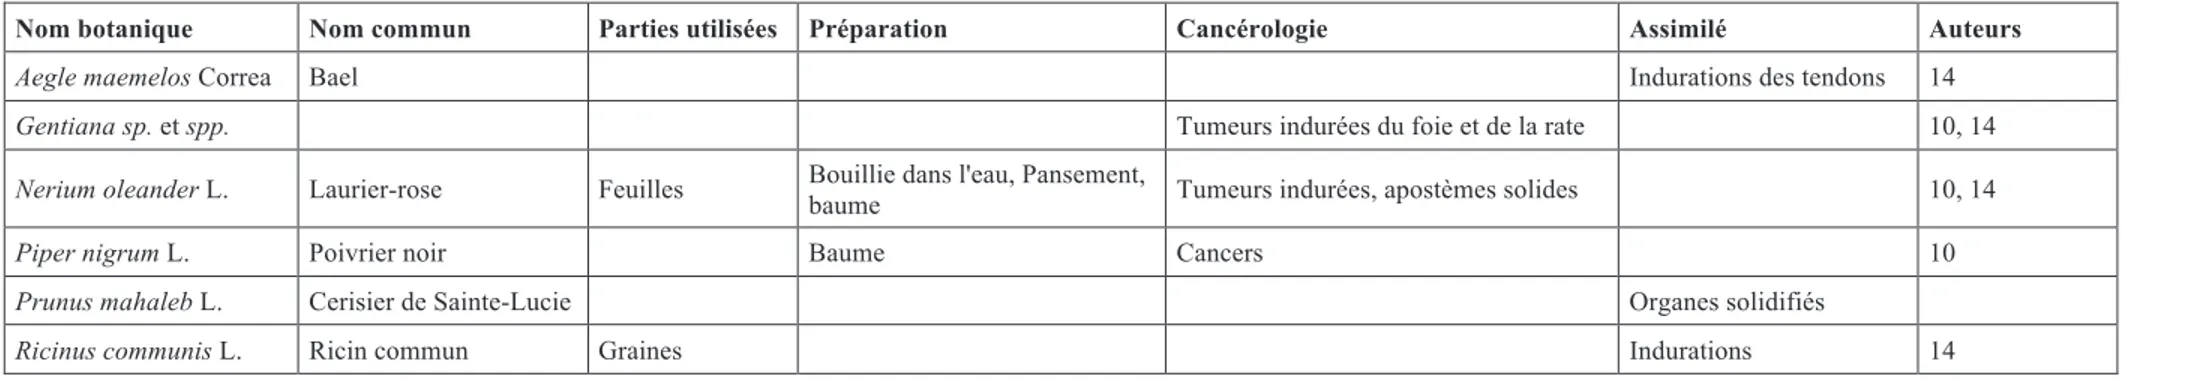 Tableau 8 : Liste des nouvelles plantes identifiées par Rhazes avec leurs indications en cancérologie ou assimilé, ainsi que les illustres auteurs ayant repris l’utilisation de ses plantes  (10 : Avicenne, 14 : Ibn al-Baitar) 16–26